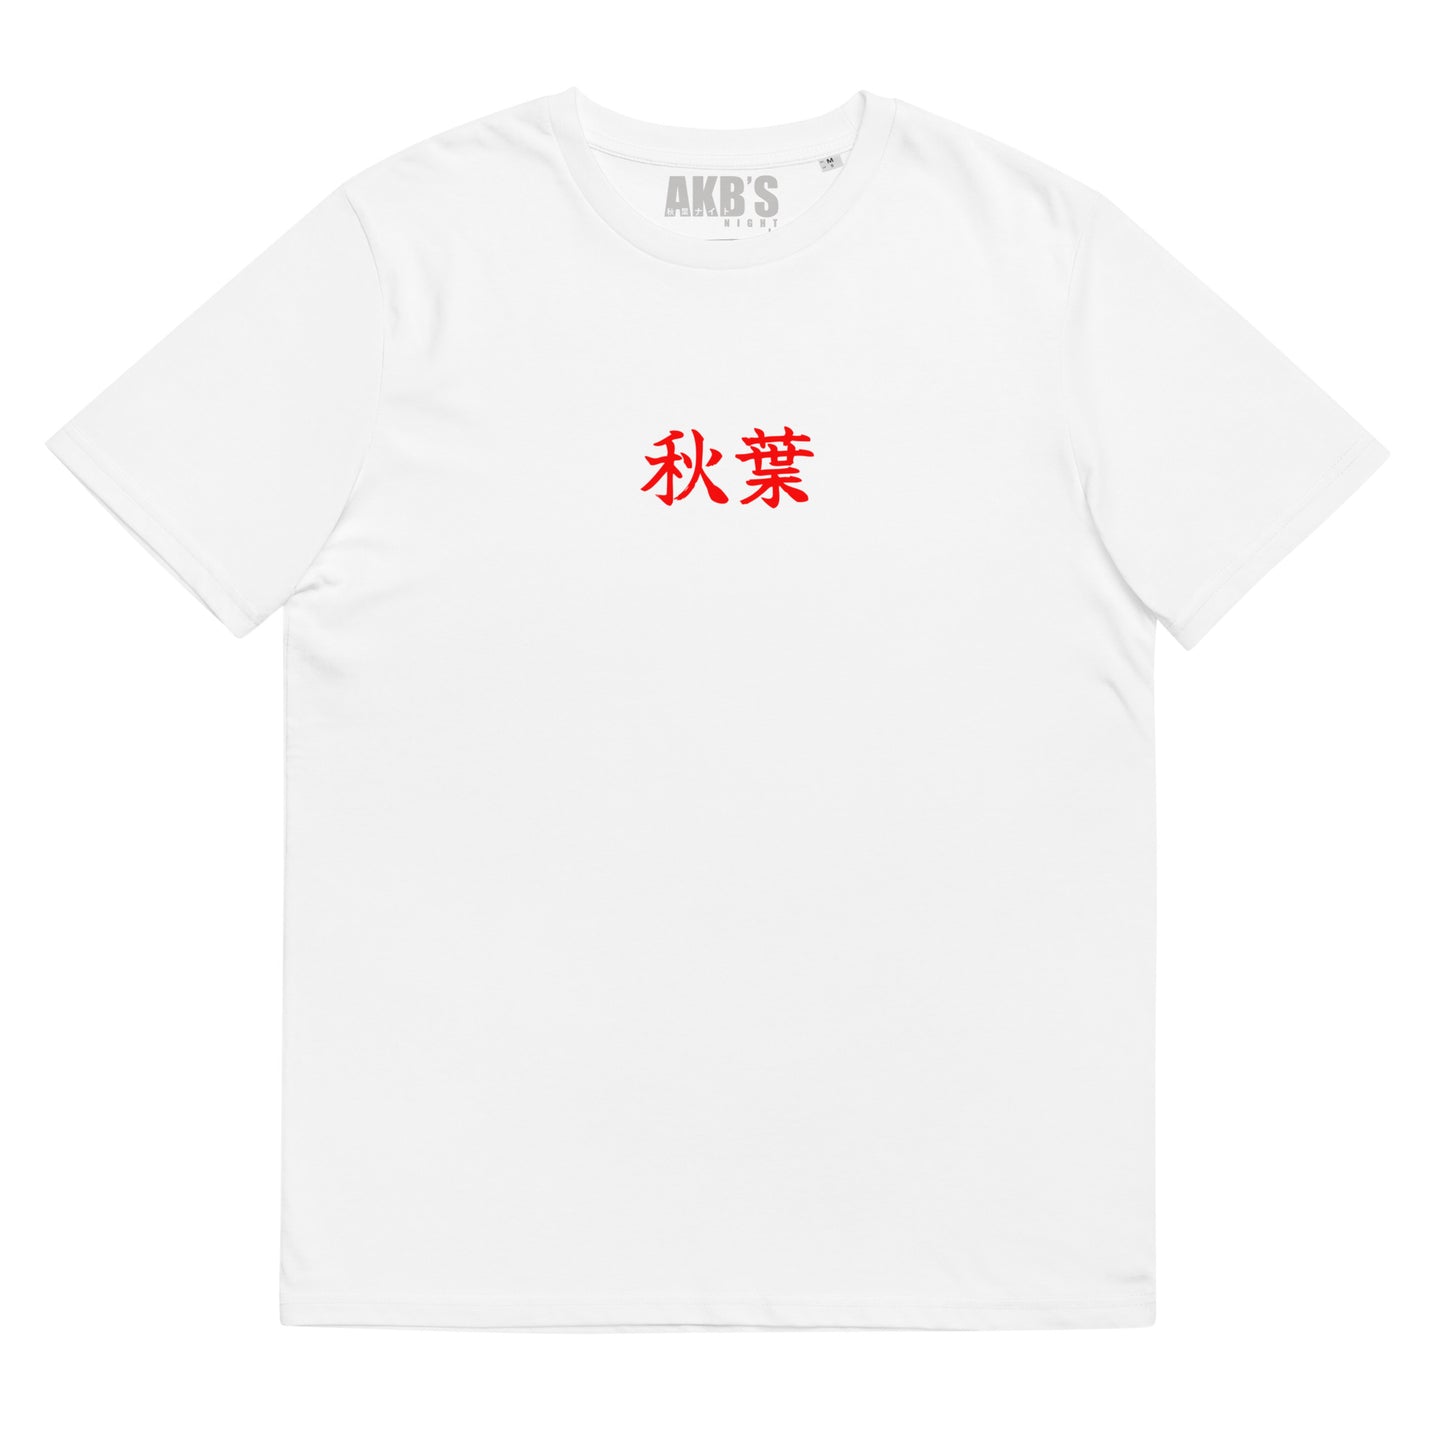 Camiseta Nakama